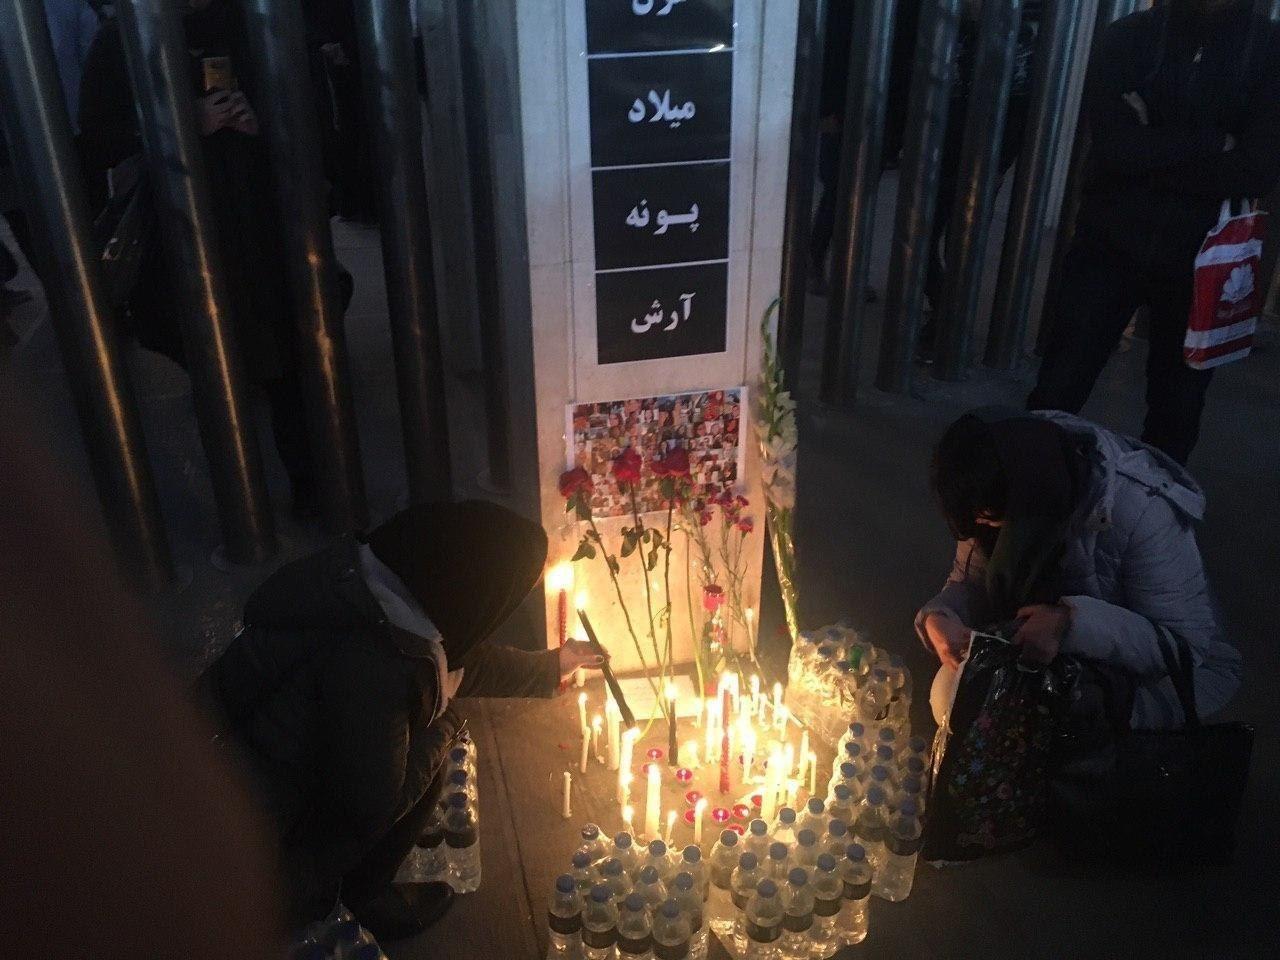 عکس/ روشن کردن شمع در دانشگاه امیر کبیر برای کشته شدگان حادثه هواپیما